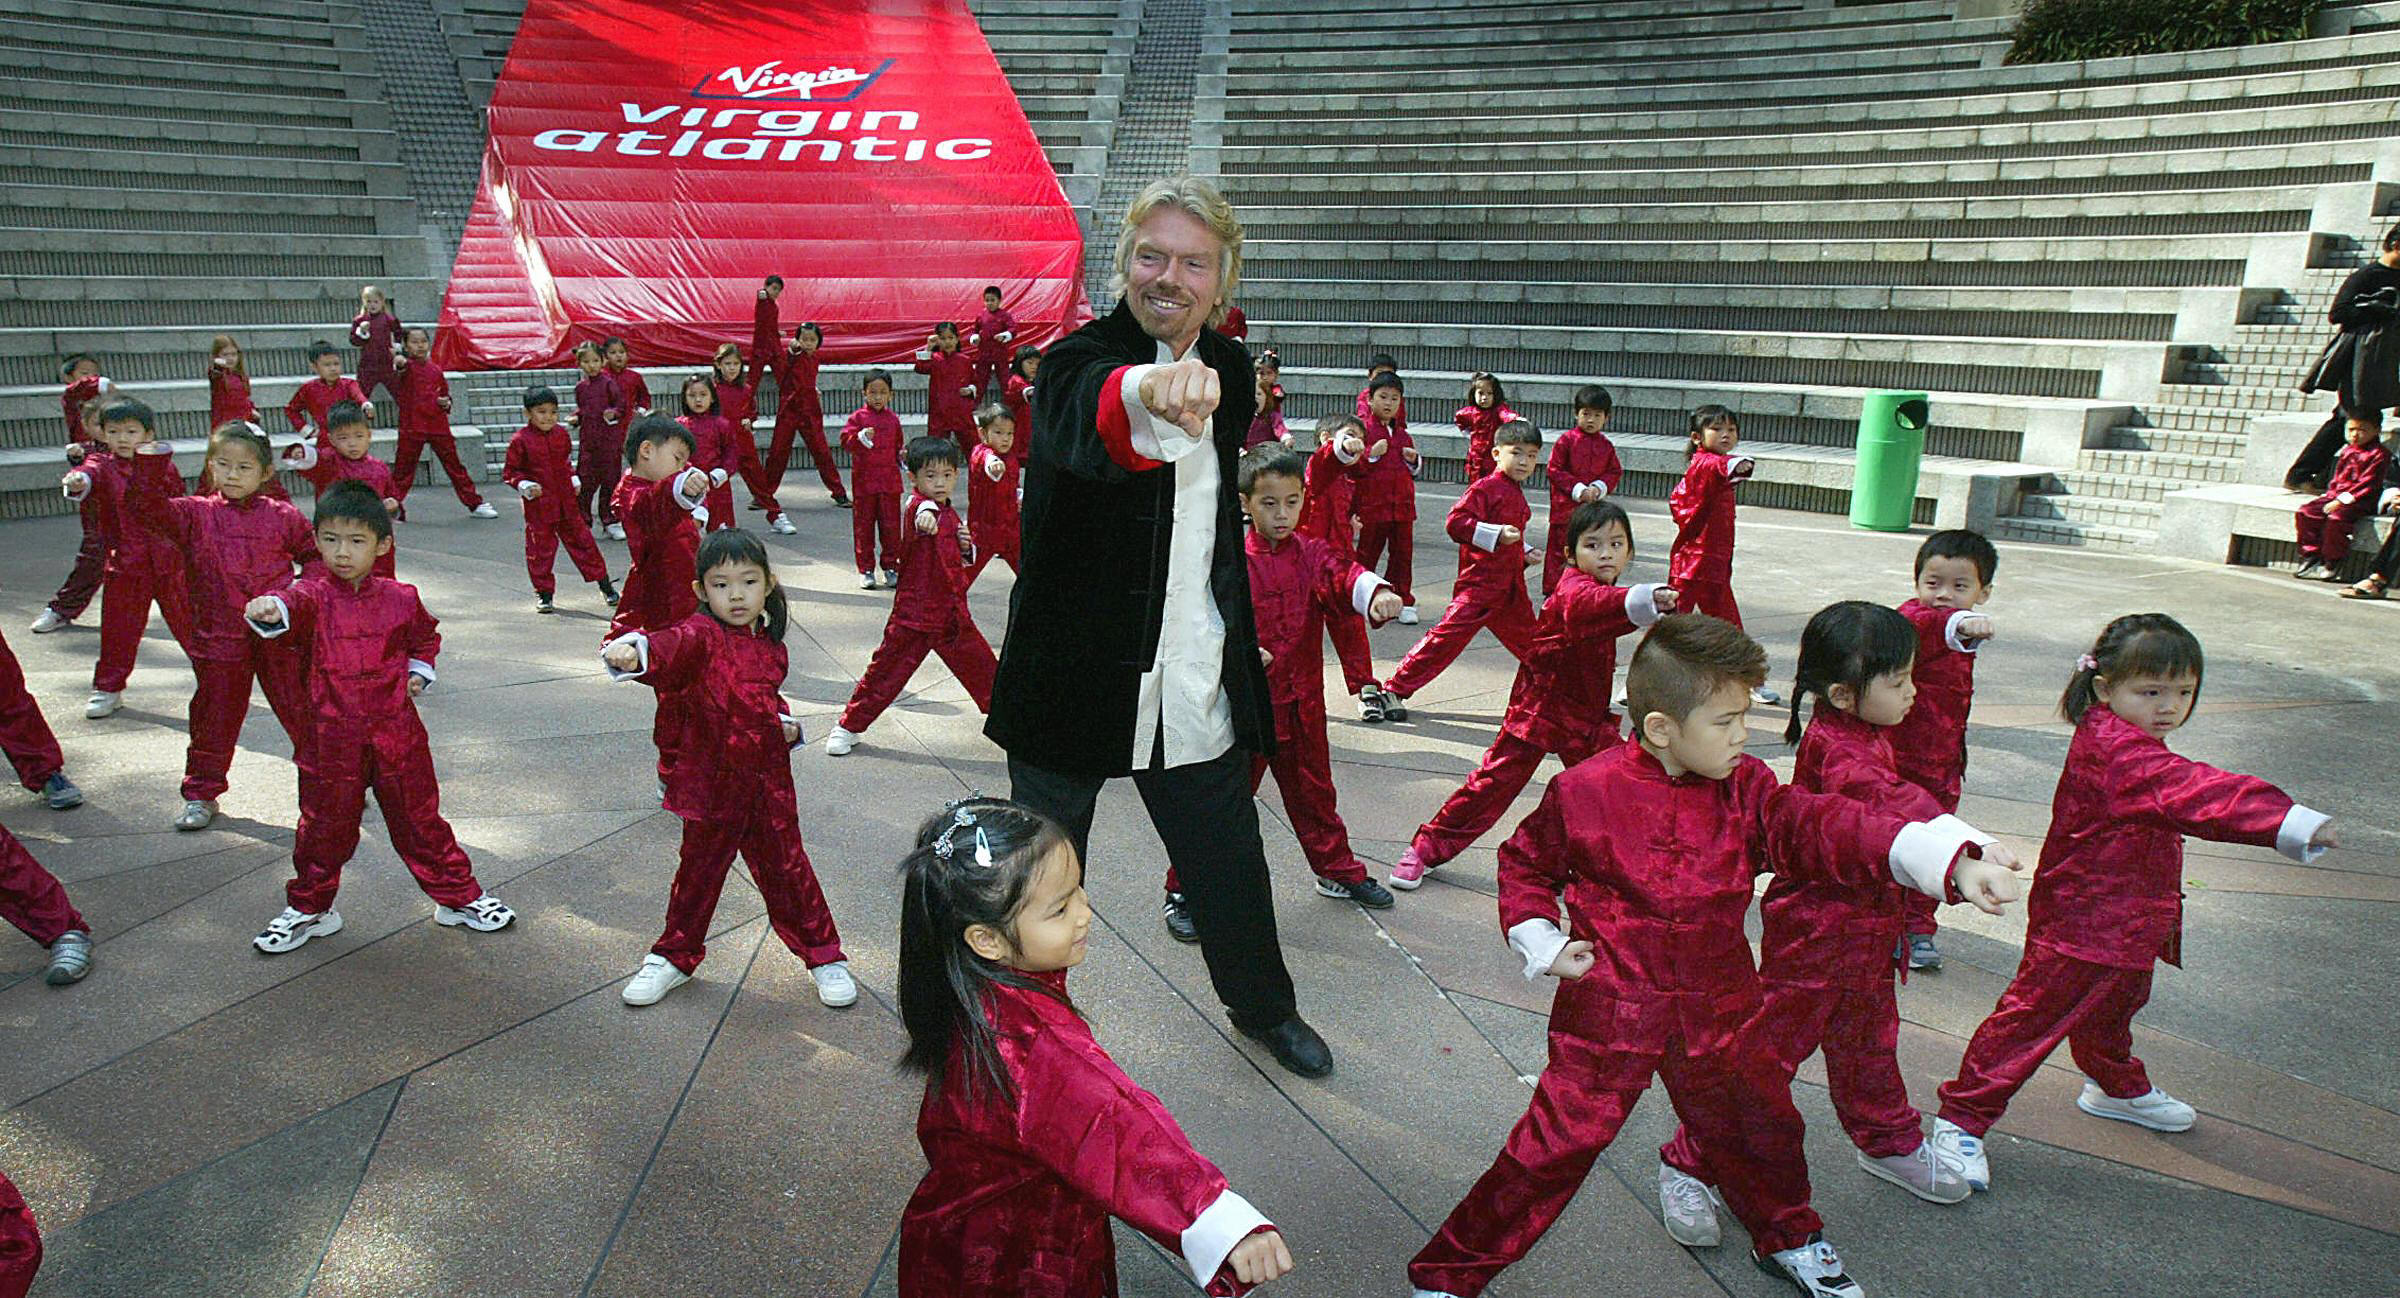 Richard Branson, chairman of Virgin Atla